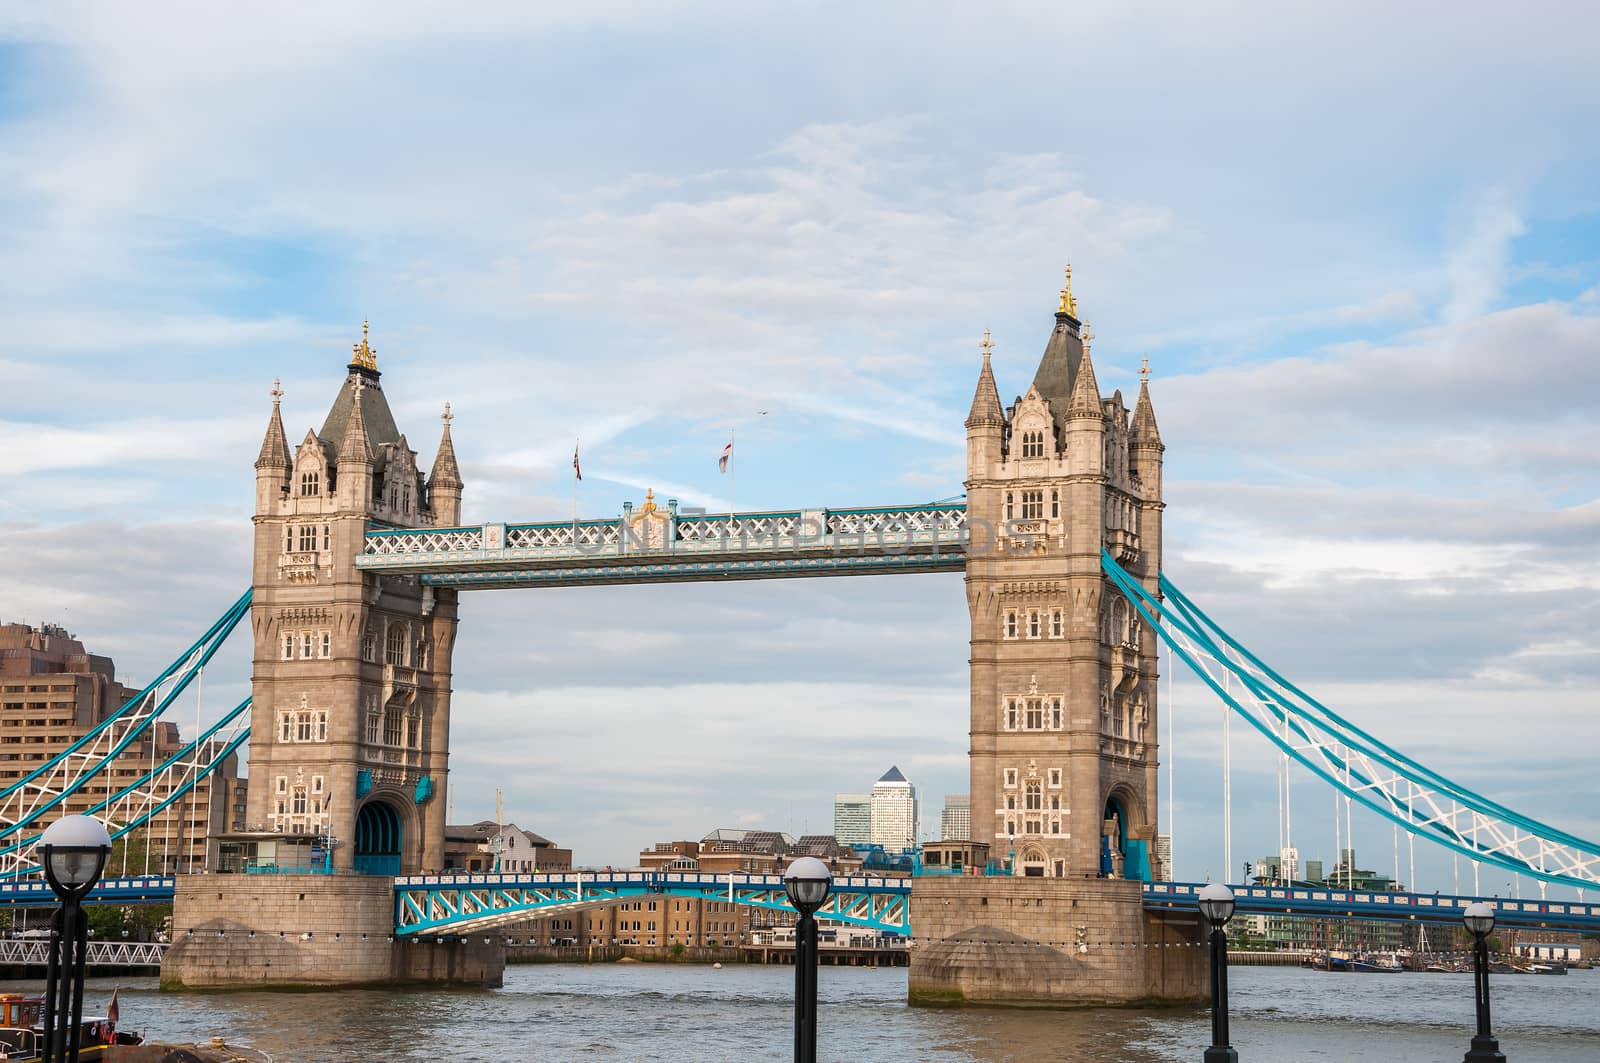 Tower Bridge in London by mkos83